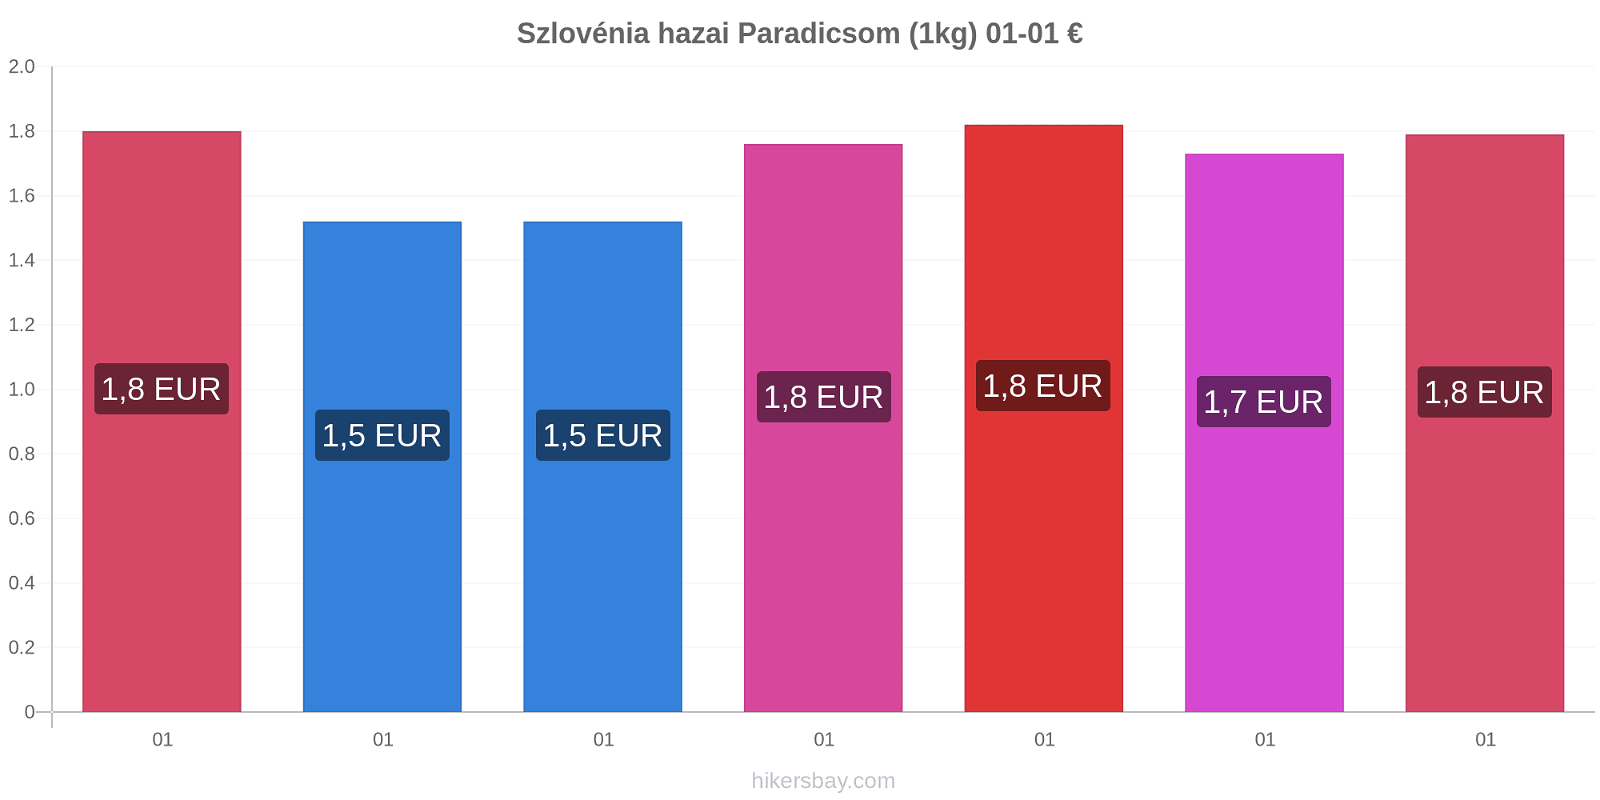 Szlovénia hazai árváltozások Paradicsom (1kg) hikersbay.com